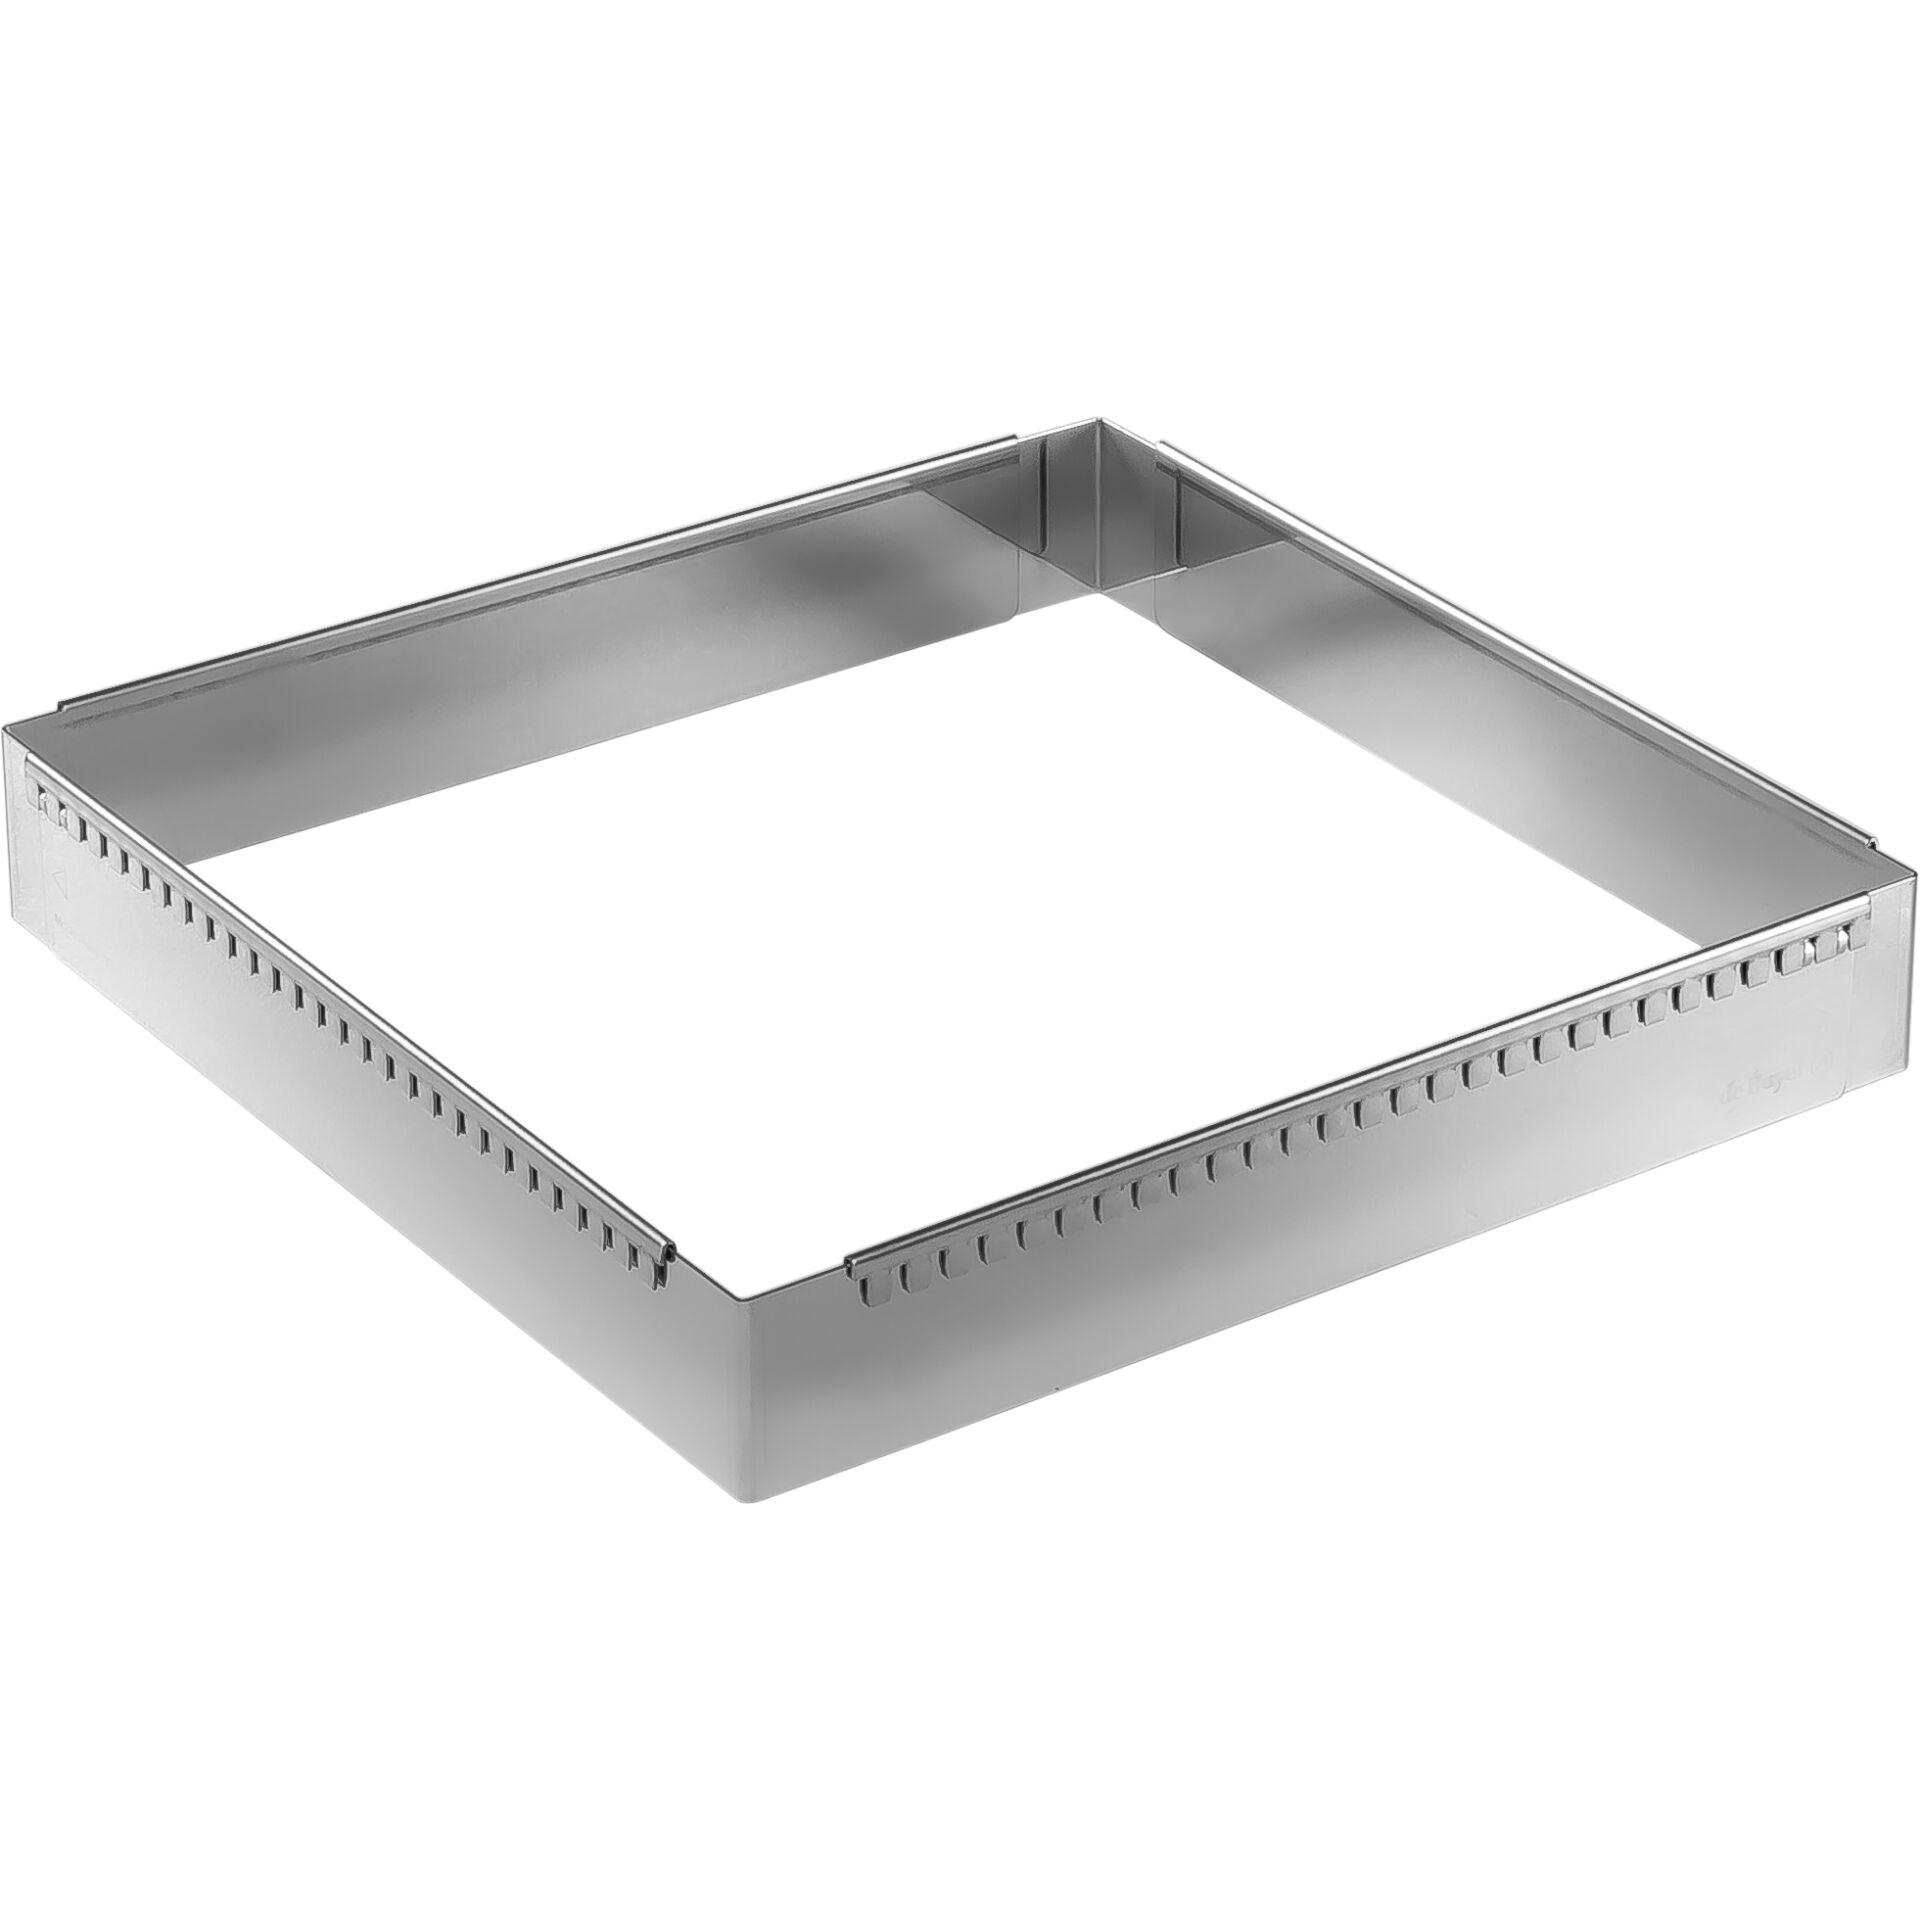 De Buyer Patisserie Frame steel adjustable 30-57 cm square